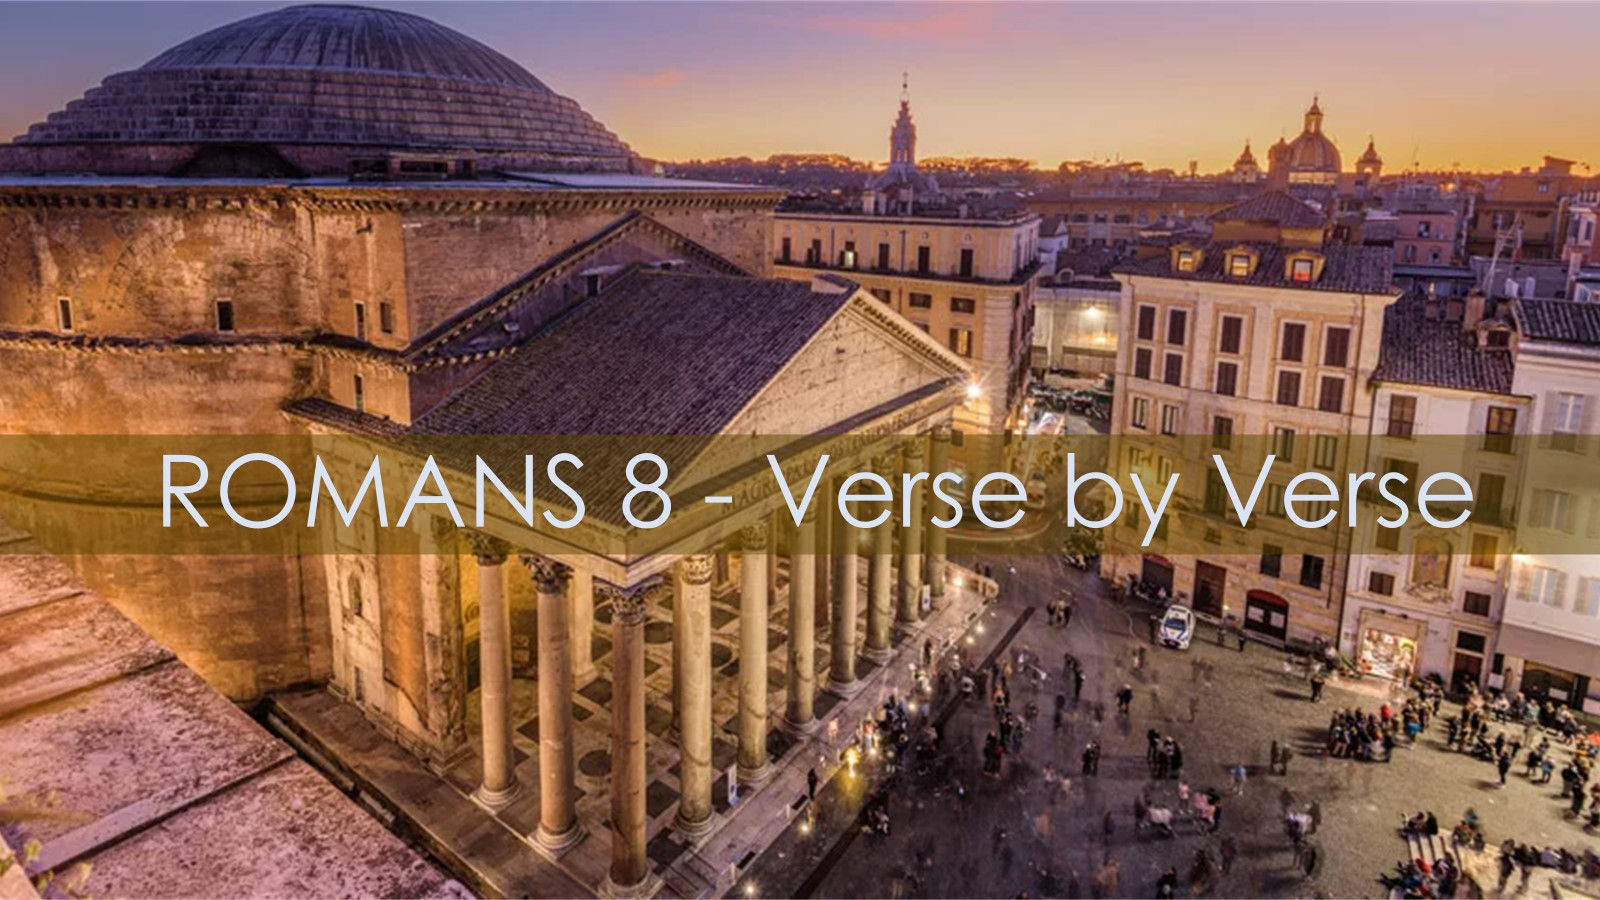 Romans 8 - Verse by Verse - Im